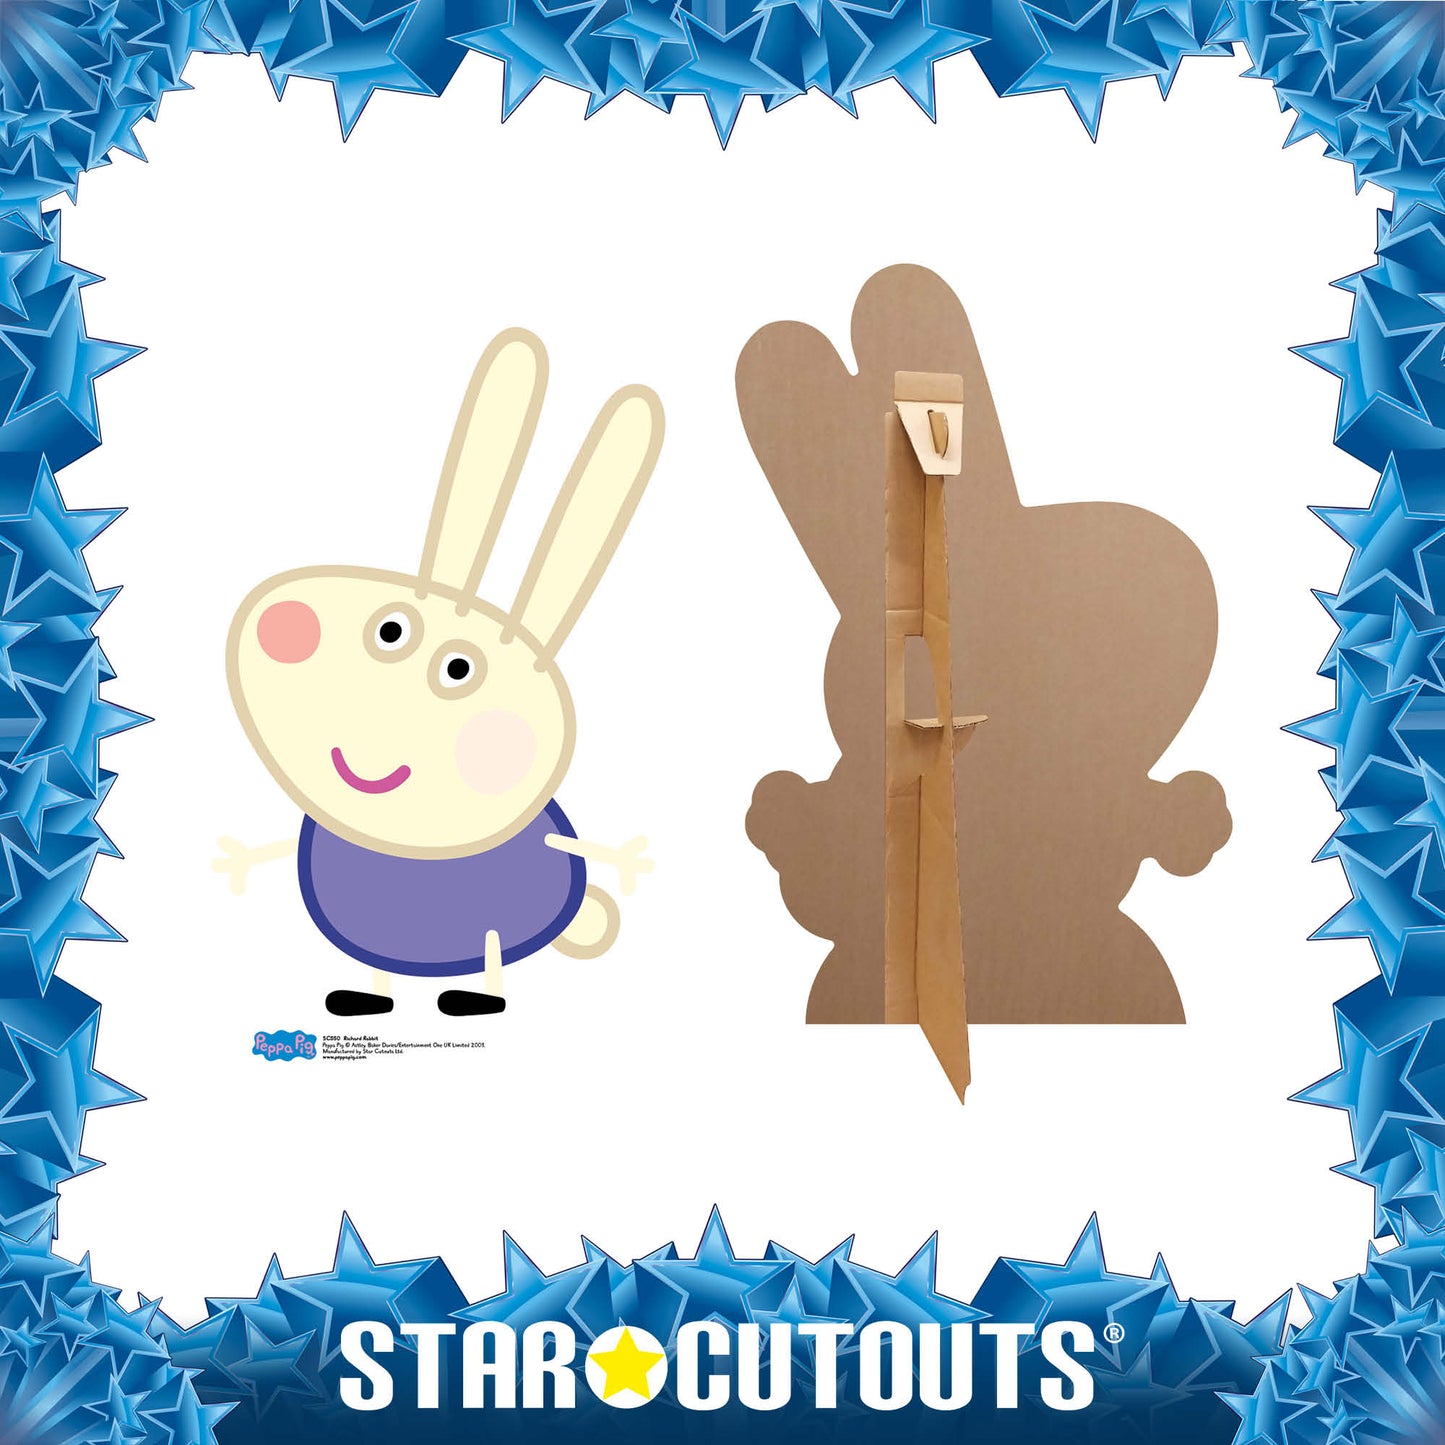 Richard Rabbit Star Mini Cutout Cardboard Cutout